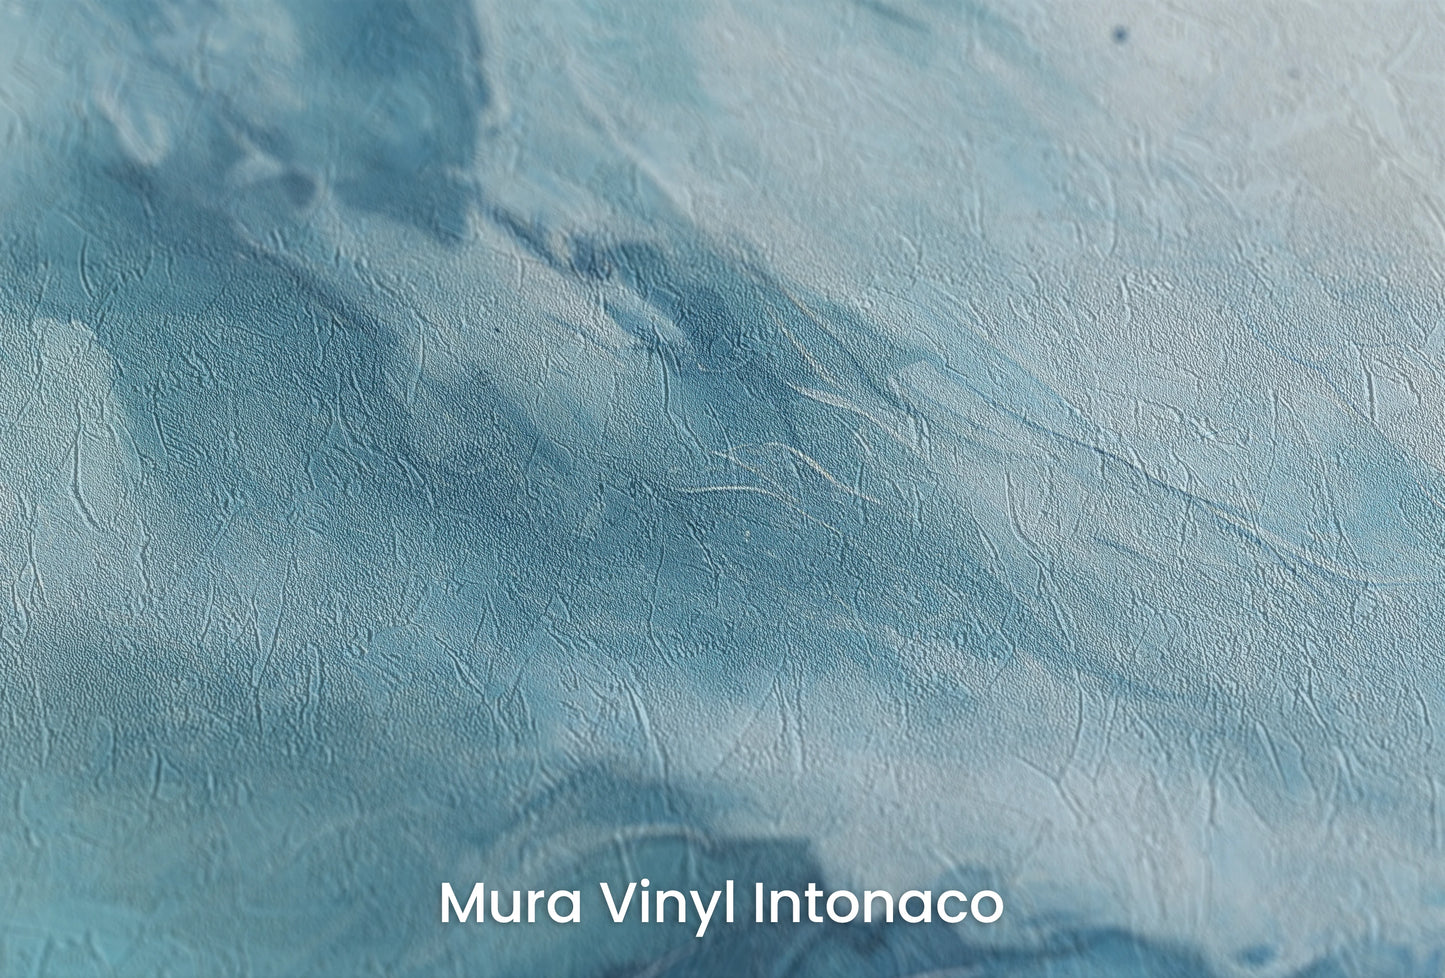 Zbliżenie na artystyczną fototapetę o nazwie Terran Rise na podłożu Mura Vinyl Intonaco - struktura tartego tynku.